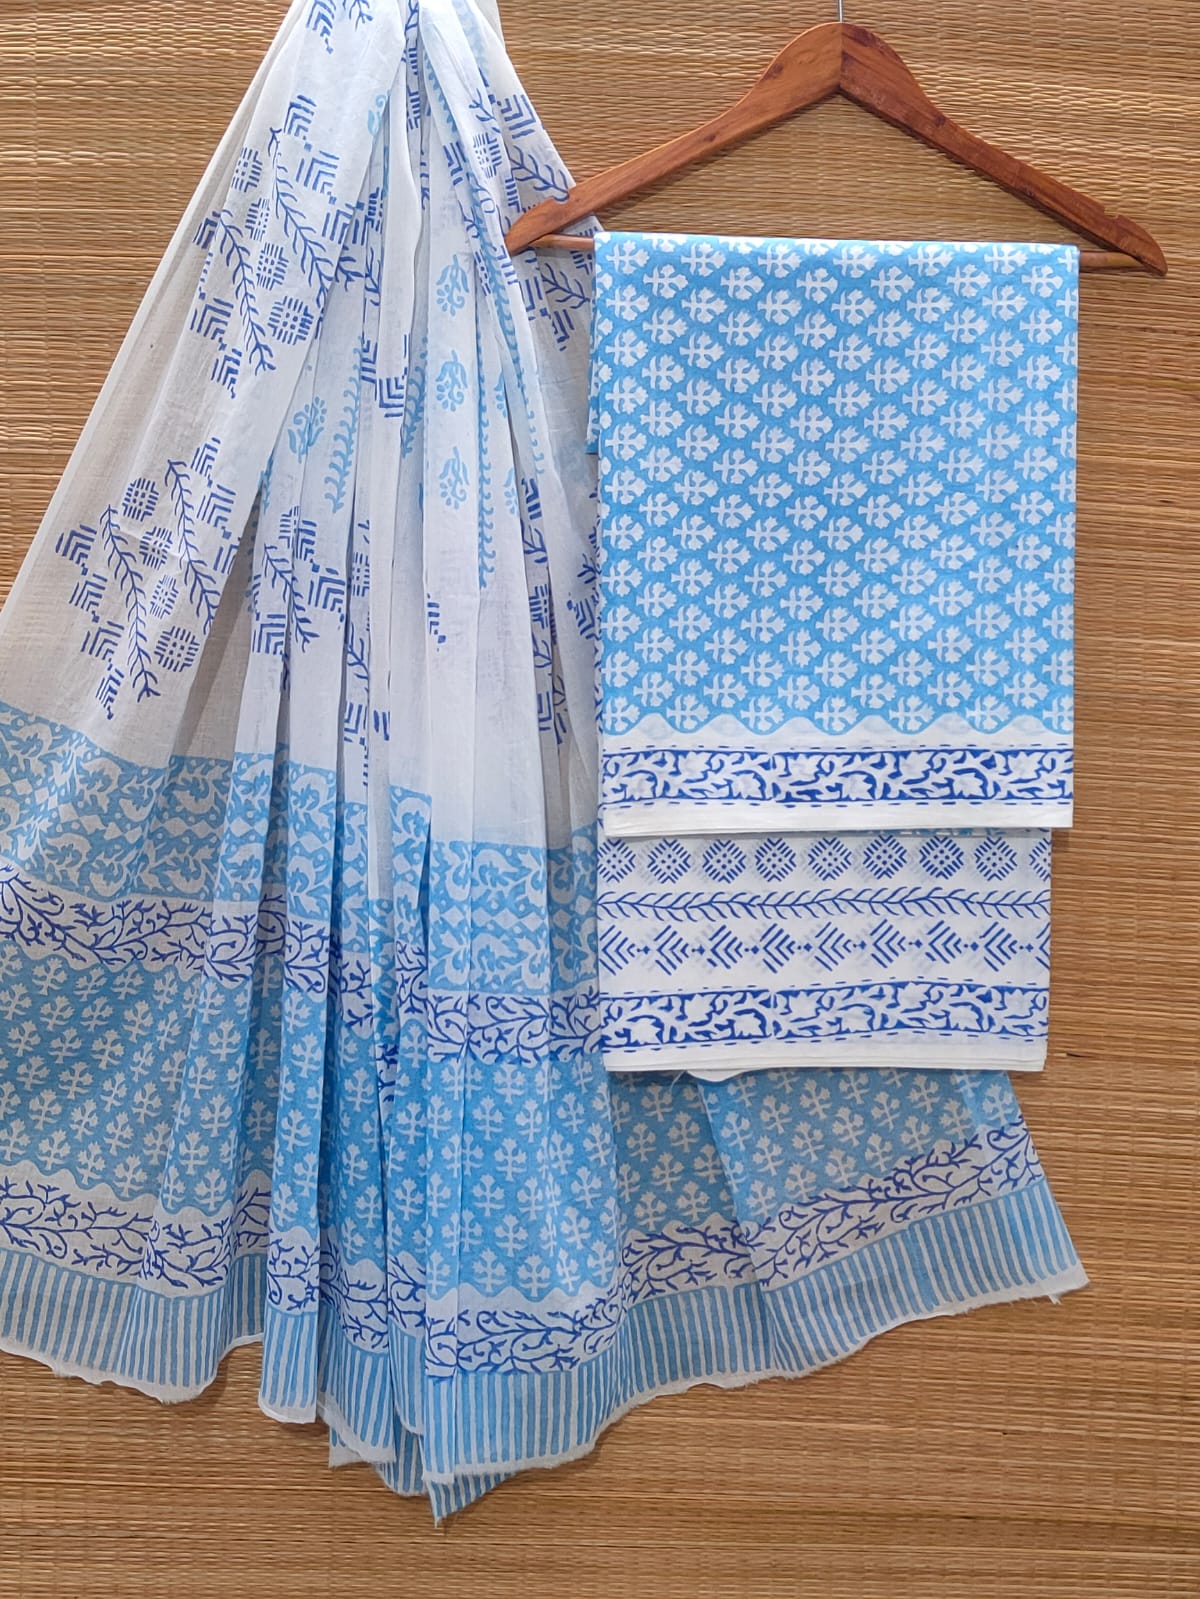 Hand Block Cotton Unstitched Salwar Suit With Cotton/Mulmul Dupatta - JBOCM157